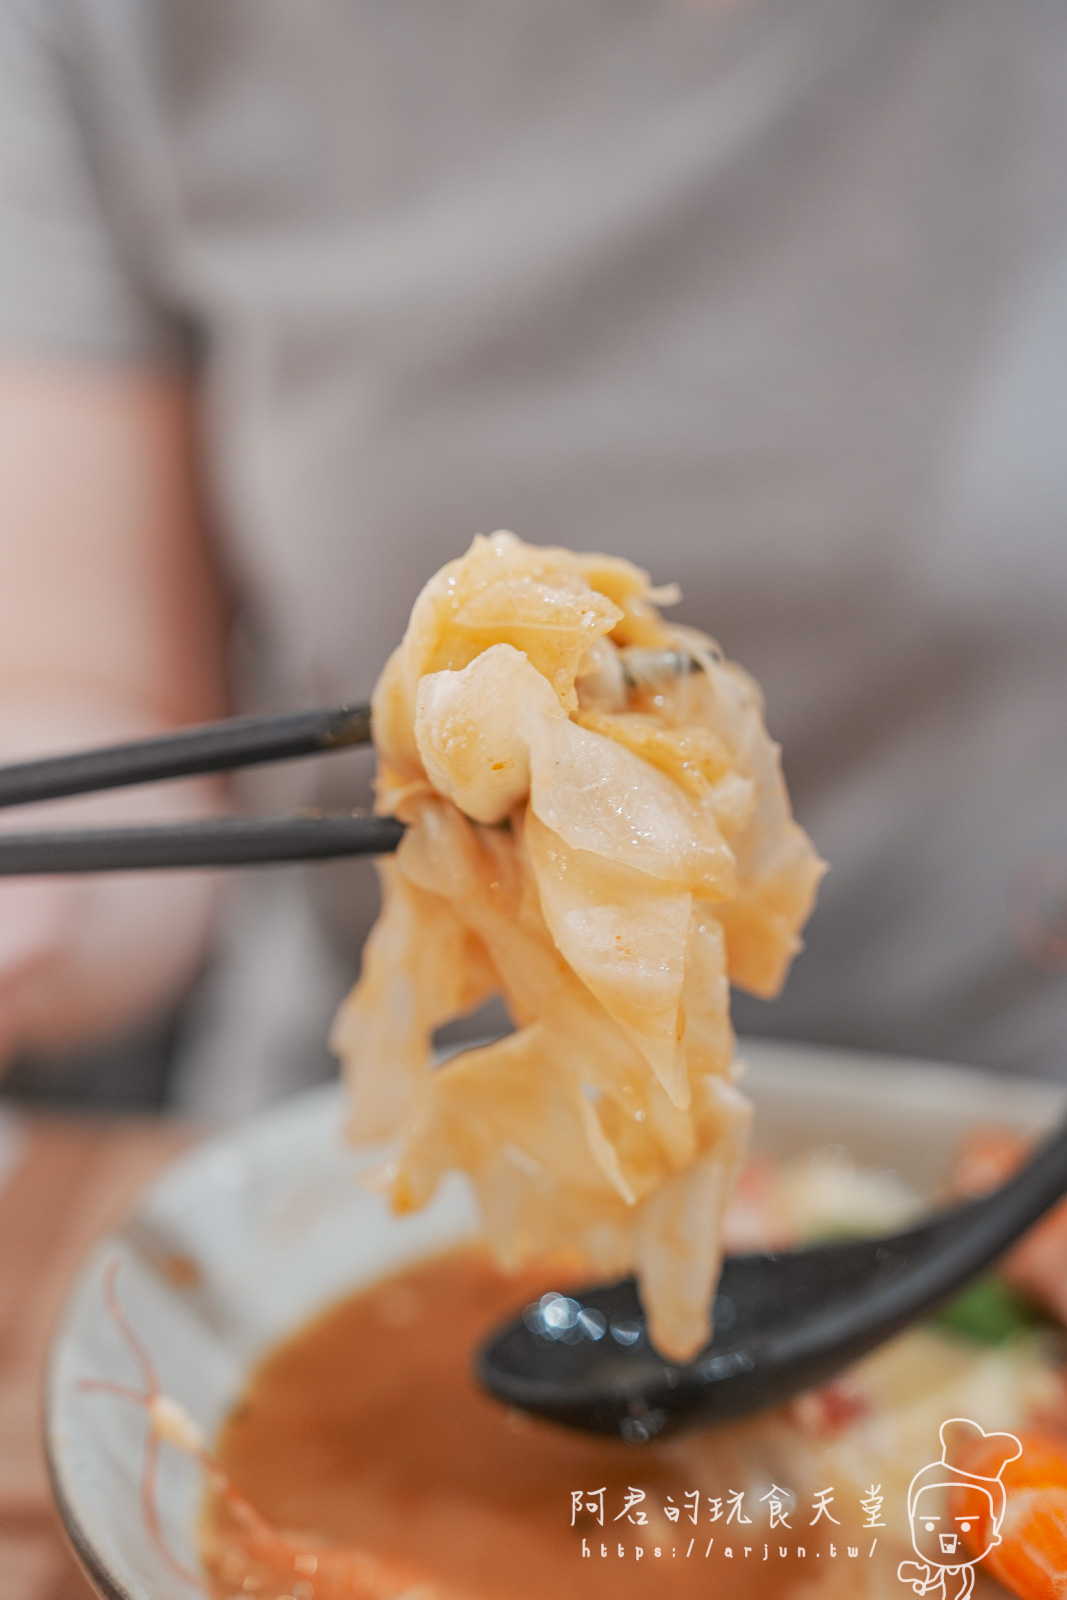 【彰化】仁之初北海道湯咖哩專賣，來彰化還在吃肉圓？來吃最美味的湯咖哩！(菜單)